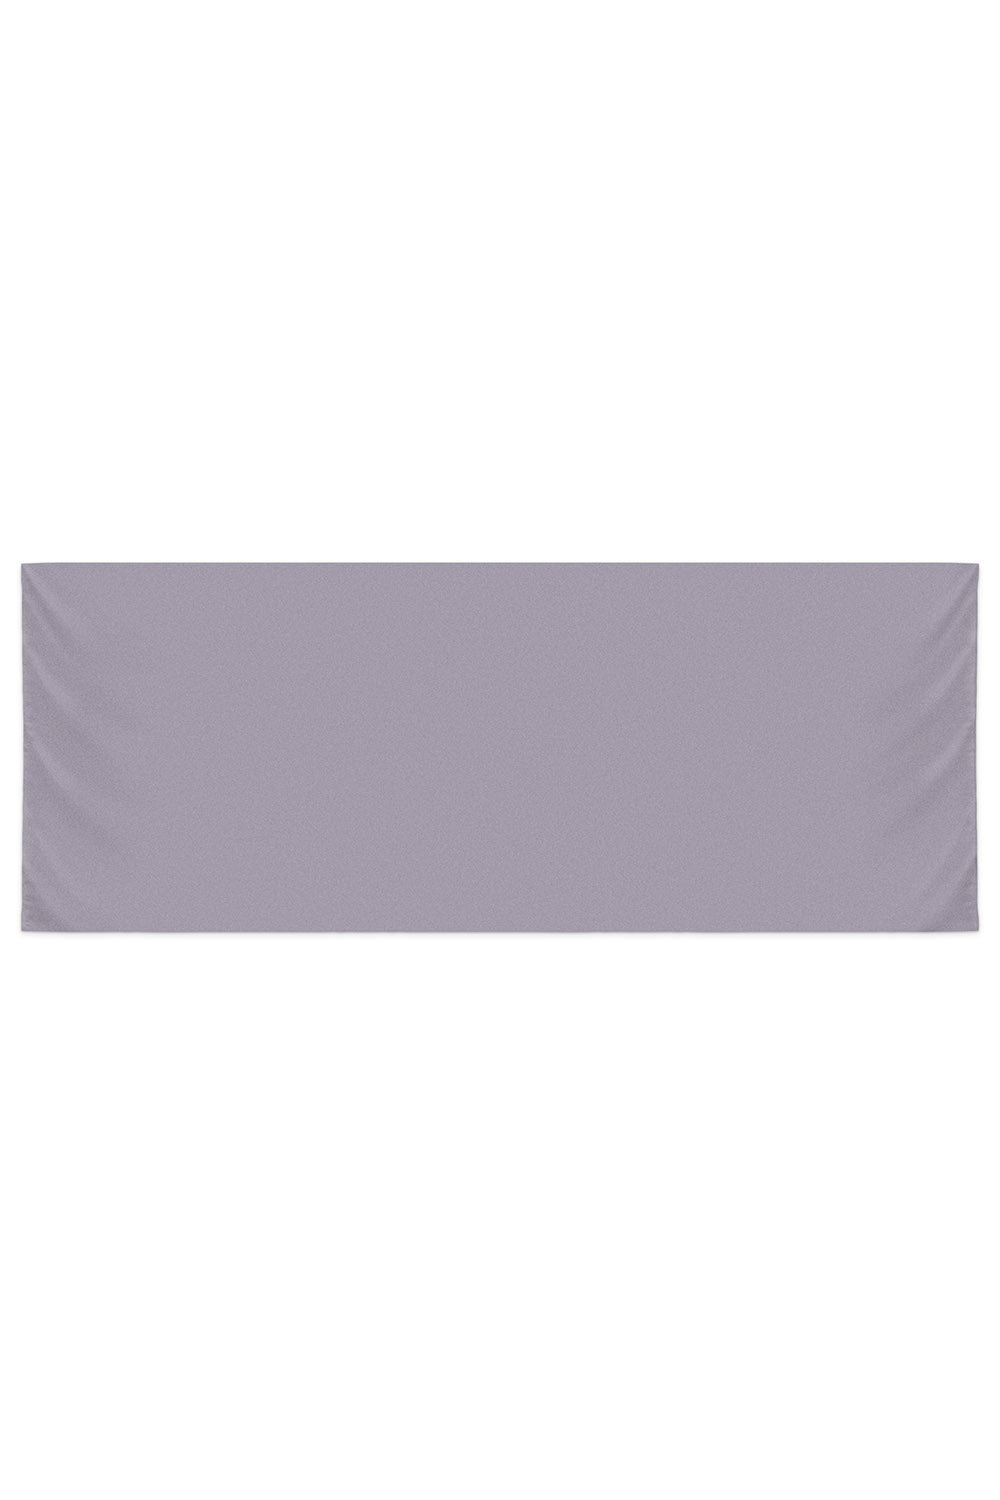 RR Basic Chiffon Shawl in Dusty Purple